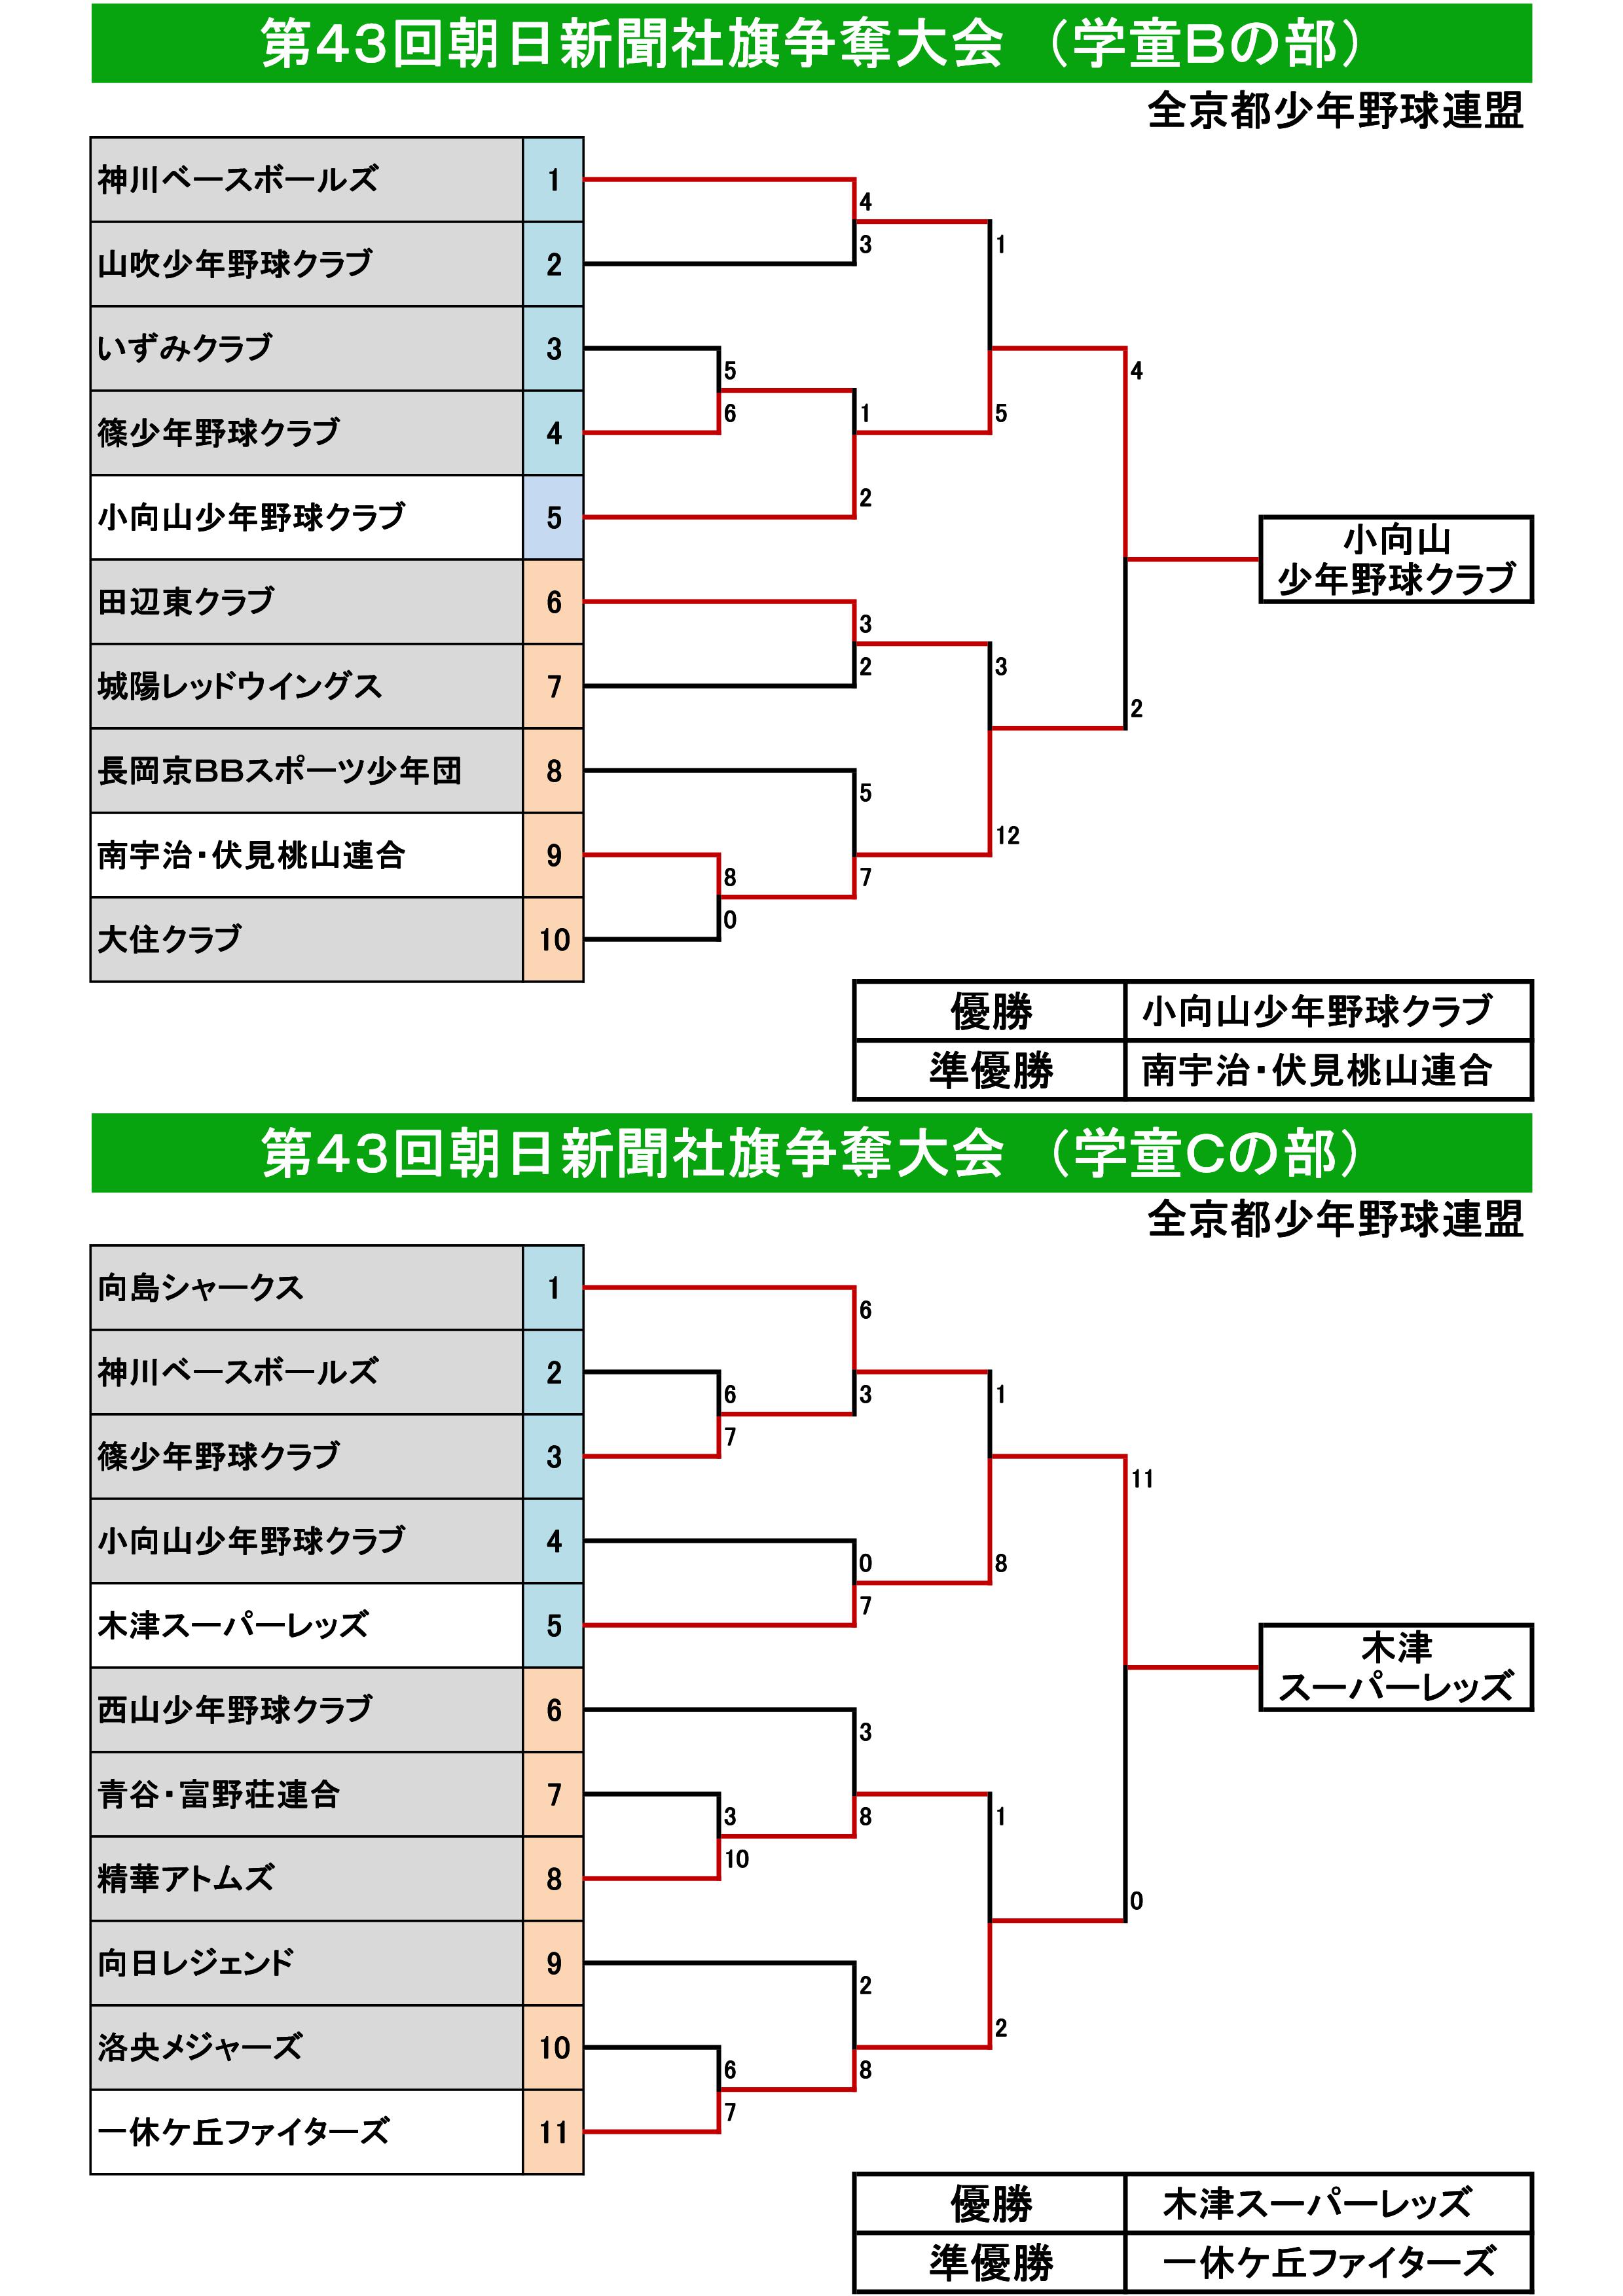 BC43回朝日新聞社旗トーナメント表 (2020.8.2～).jpg